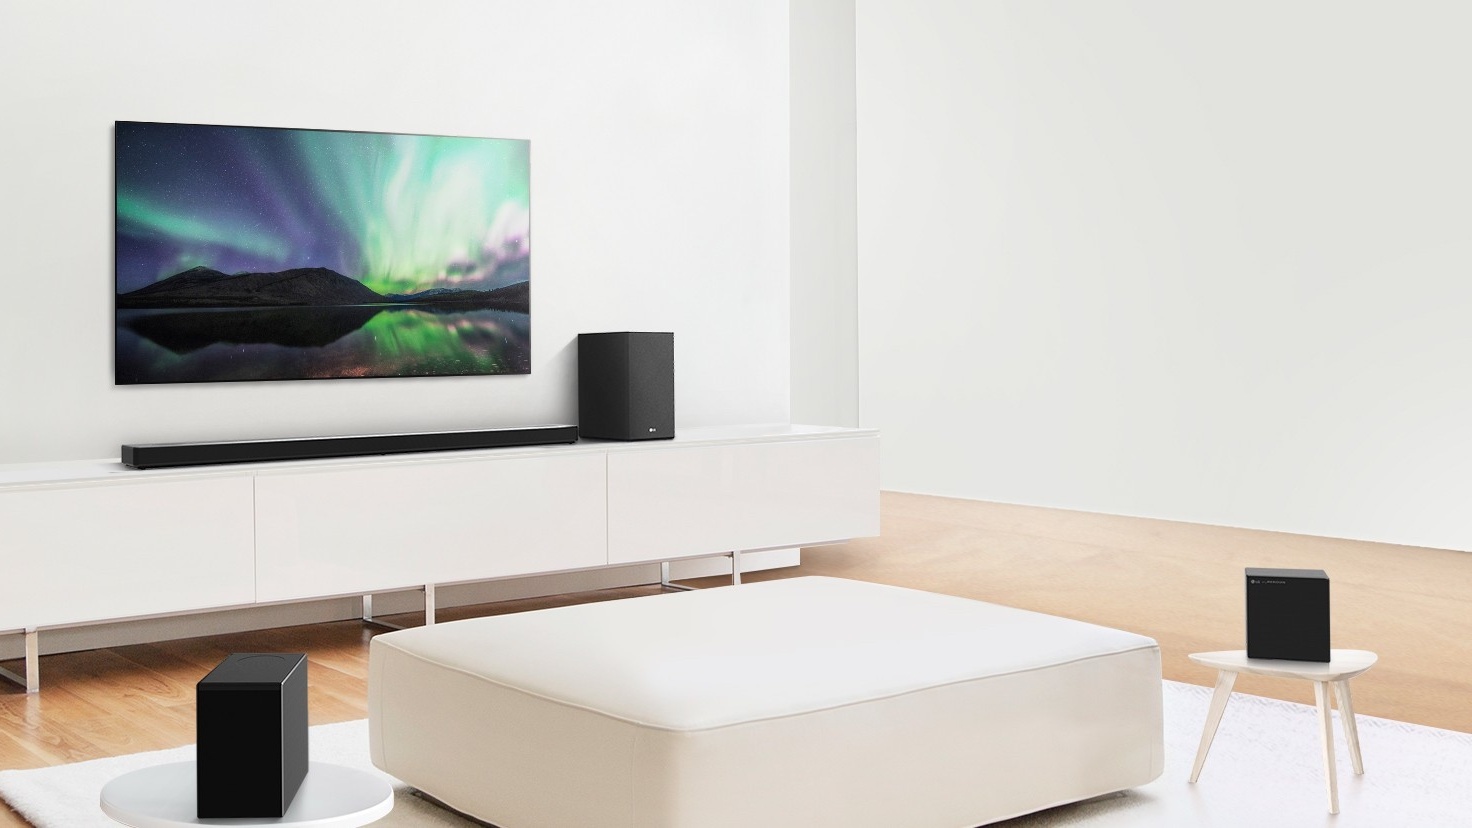 Should you buy an LG soundbar? | Hi-Fi?